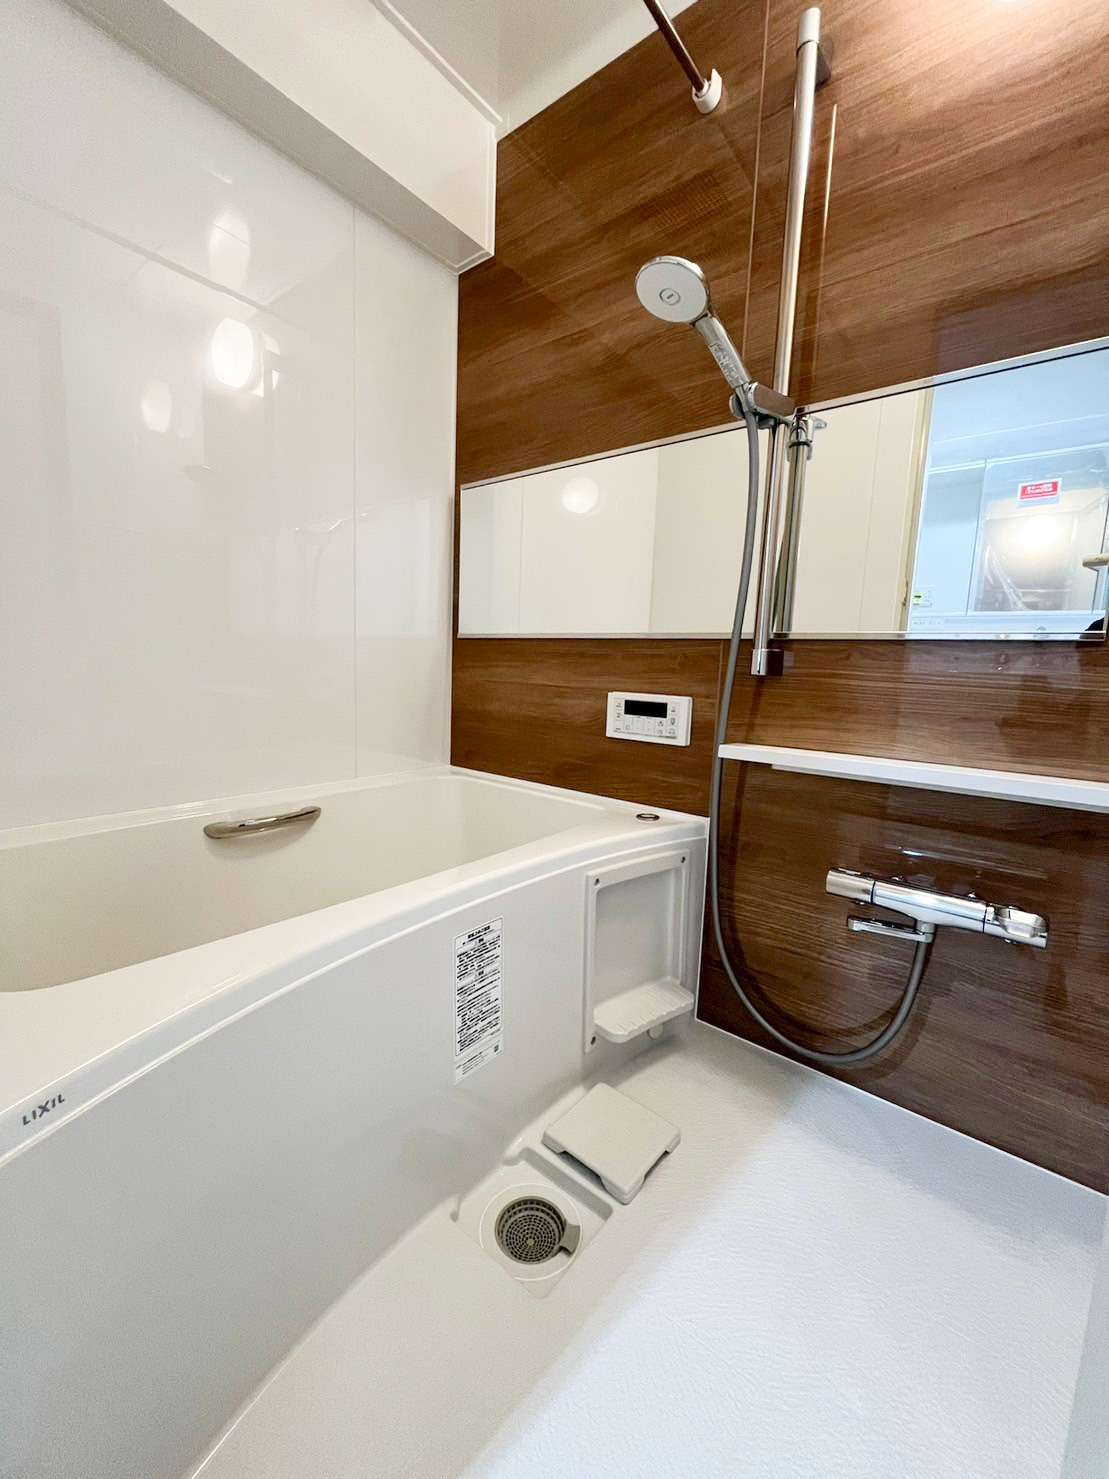 習志野市　浴室  ユニットバス  リフォーム リノベーション  LIXIL 認定店舗